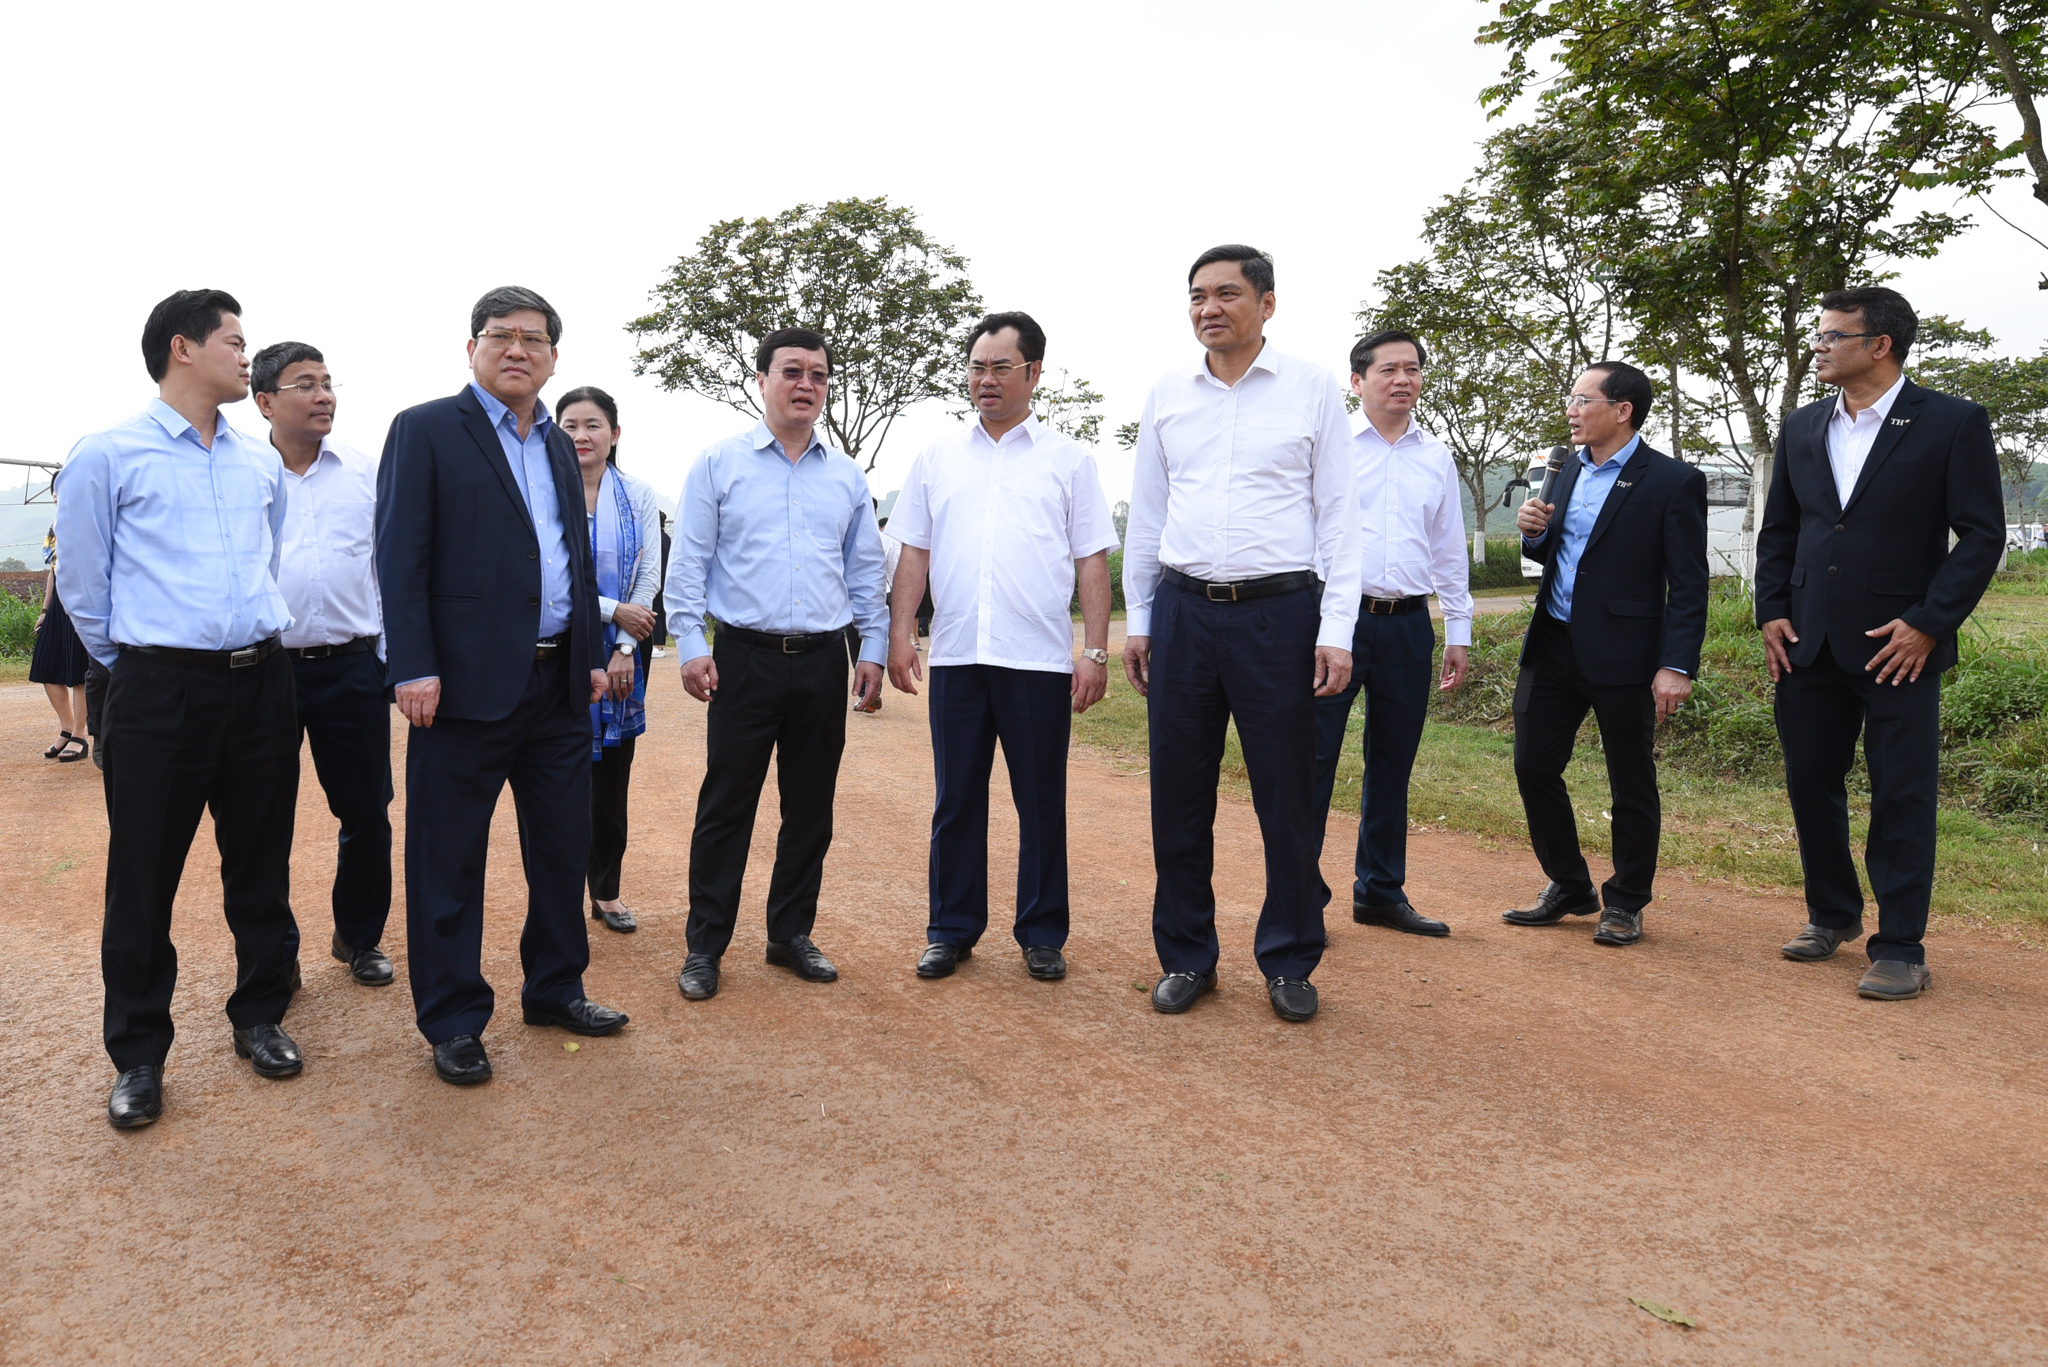 Ông Nguyễn Duy Bắc, Phó Giám đốc Thường trực Học viện Chính trị Quốc gia Hồ Chí Minh (thứ 3 từ trái qua) cùng đoàn đại biểu thăm cánh đồng nguyên liệu ứng dụng công nghệ cao của Tập đoàn TH. Ảnh: Tùng Đinh.